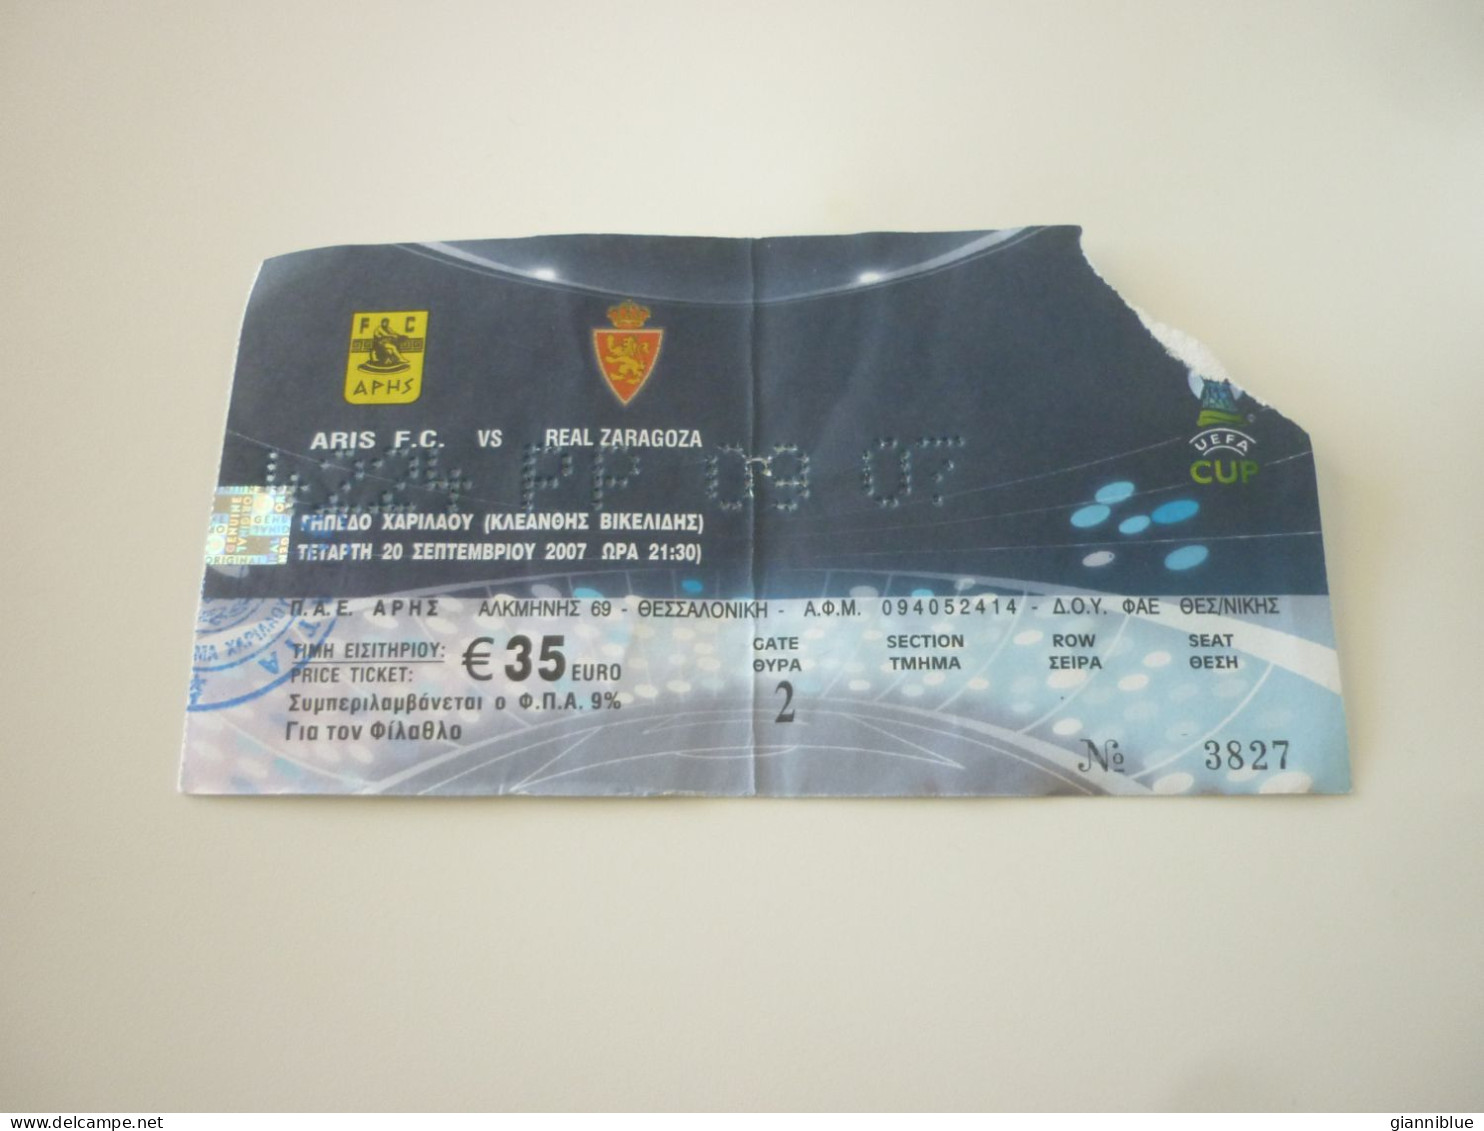 Aris-Real Zaragoza UEFA Cup Football Match Ticket Stub 20/09/2007 - Biglietti D'ingresso